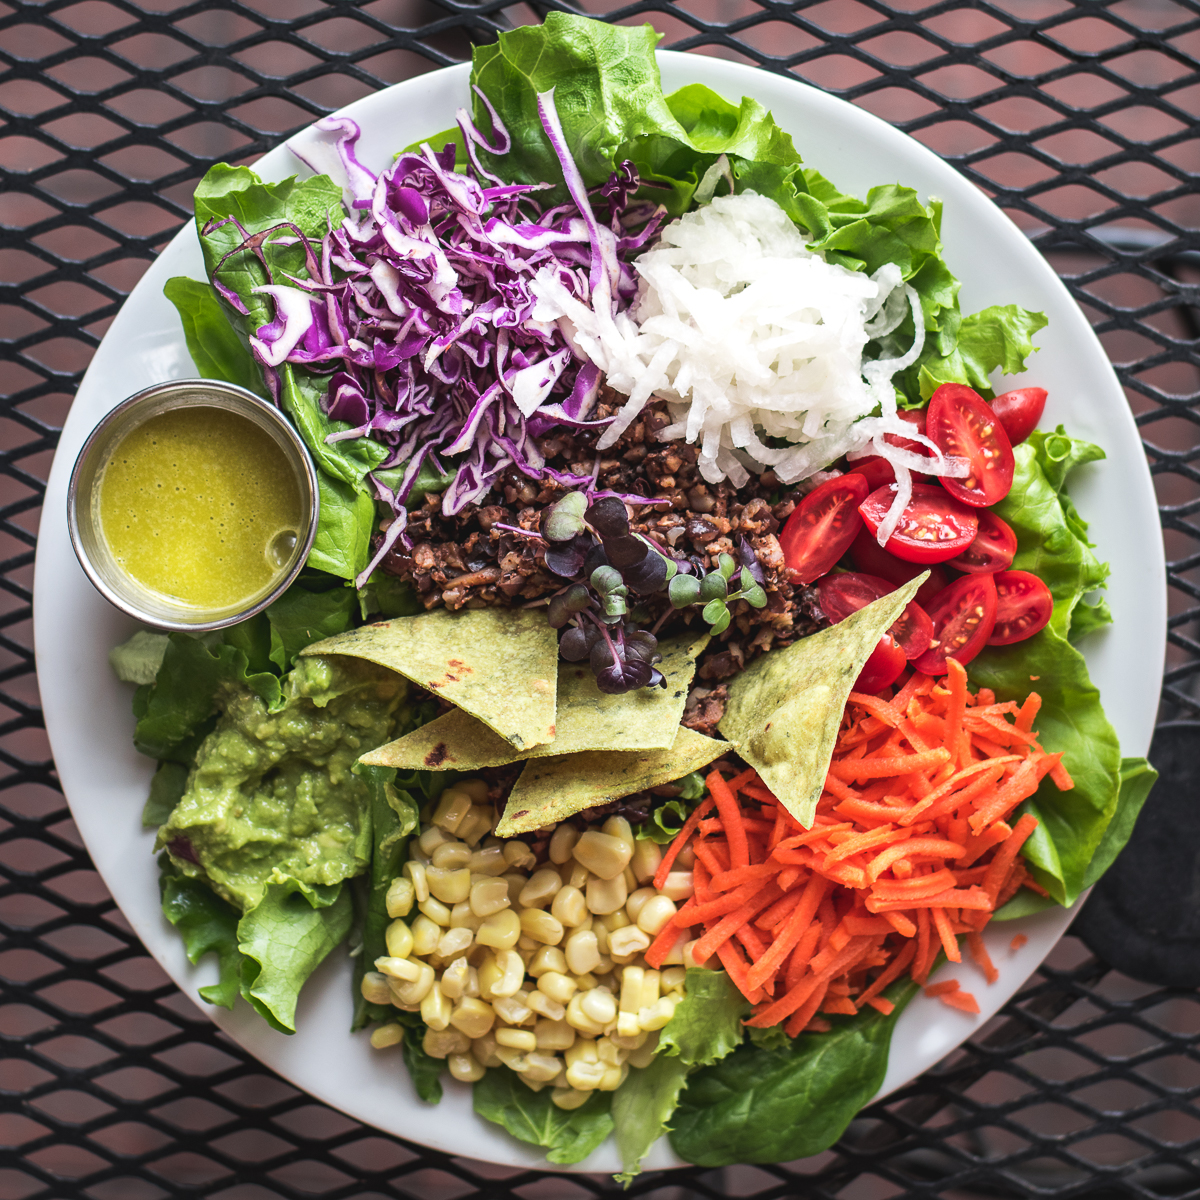 Healthy Heart Taco Salad at Urban Fresh (Credit: Jackie Tran)